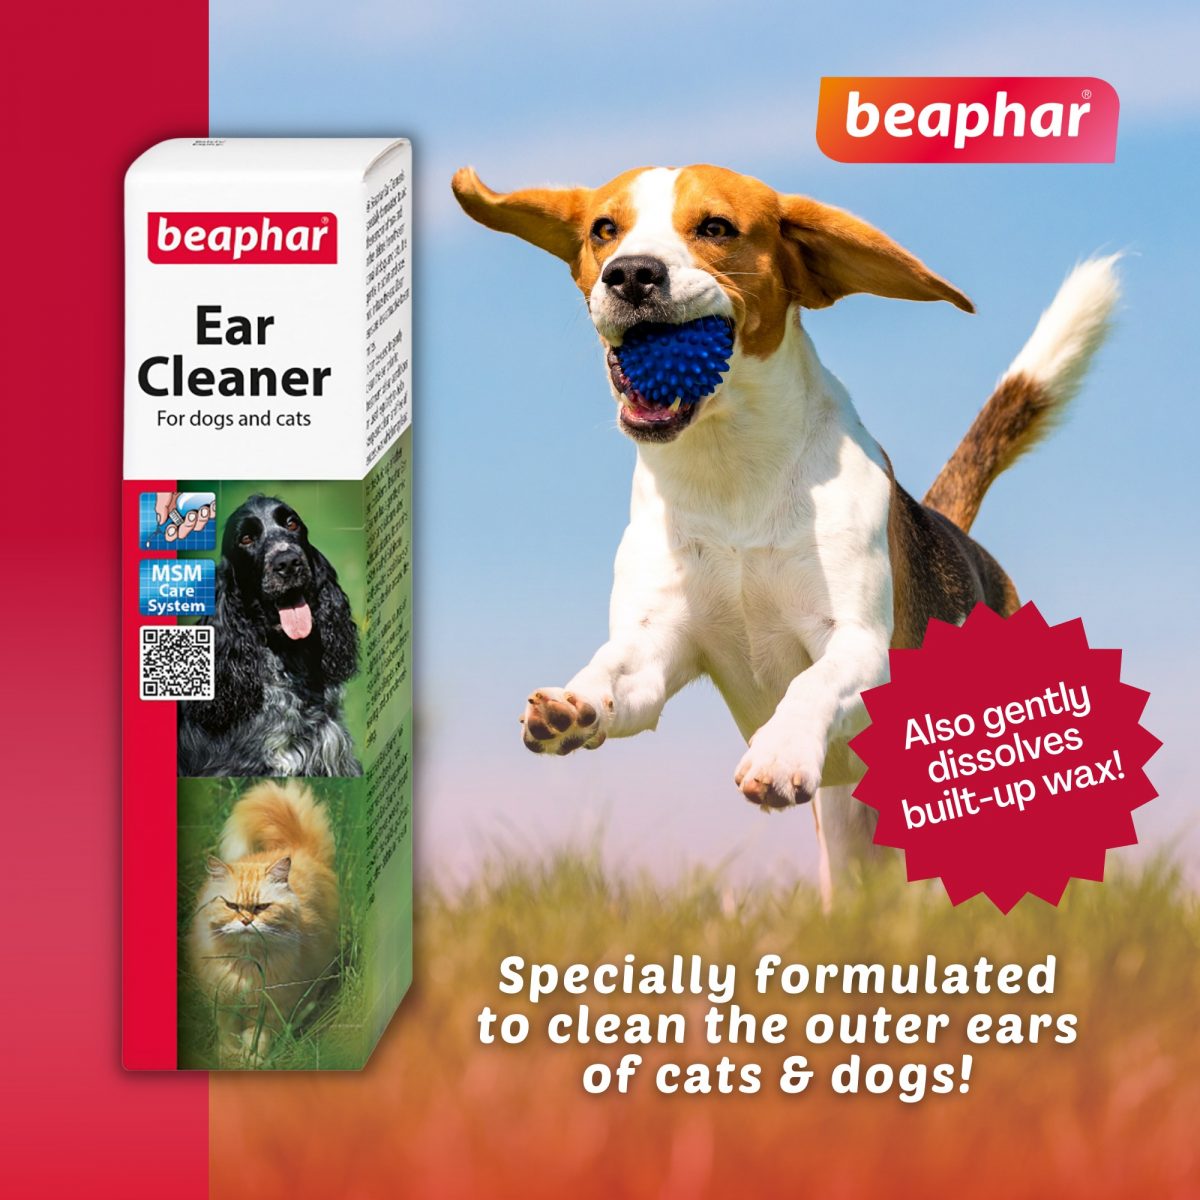 Beaphar Ear Cleaner for dogs